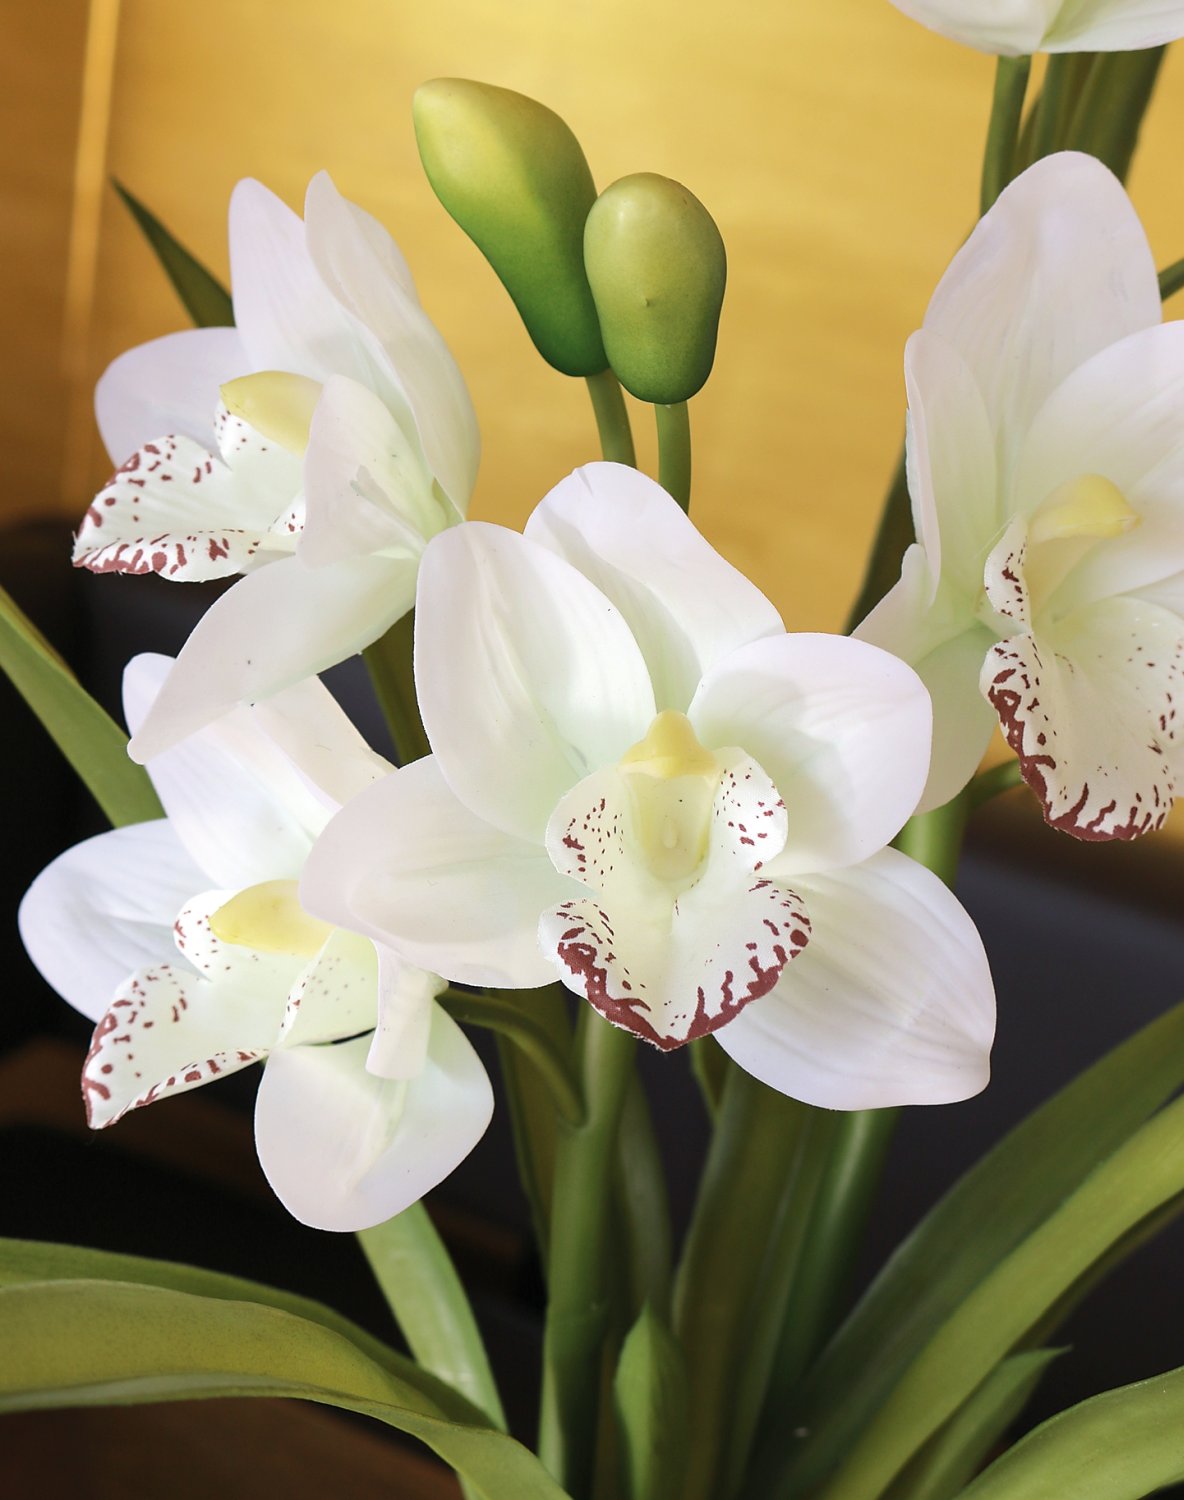 Orchidea Cymbidium artificiale, in vaso, 57 cm, Real Touch Soft, bianco-crema